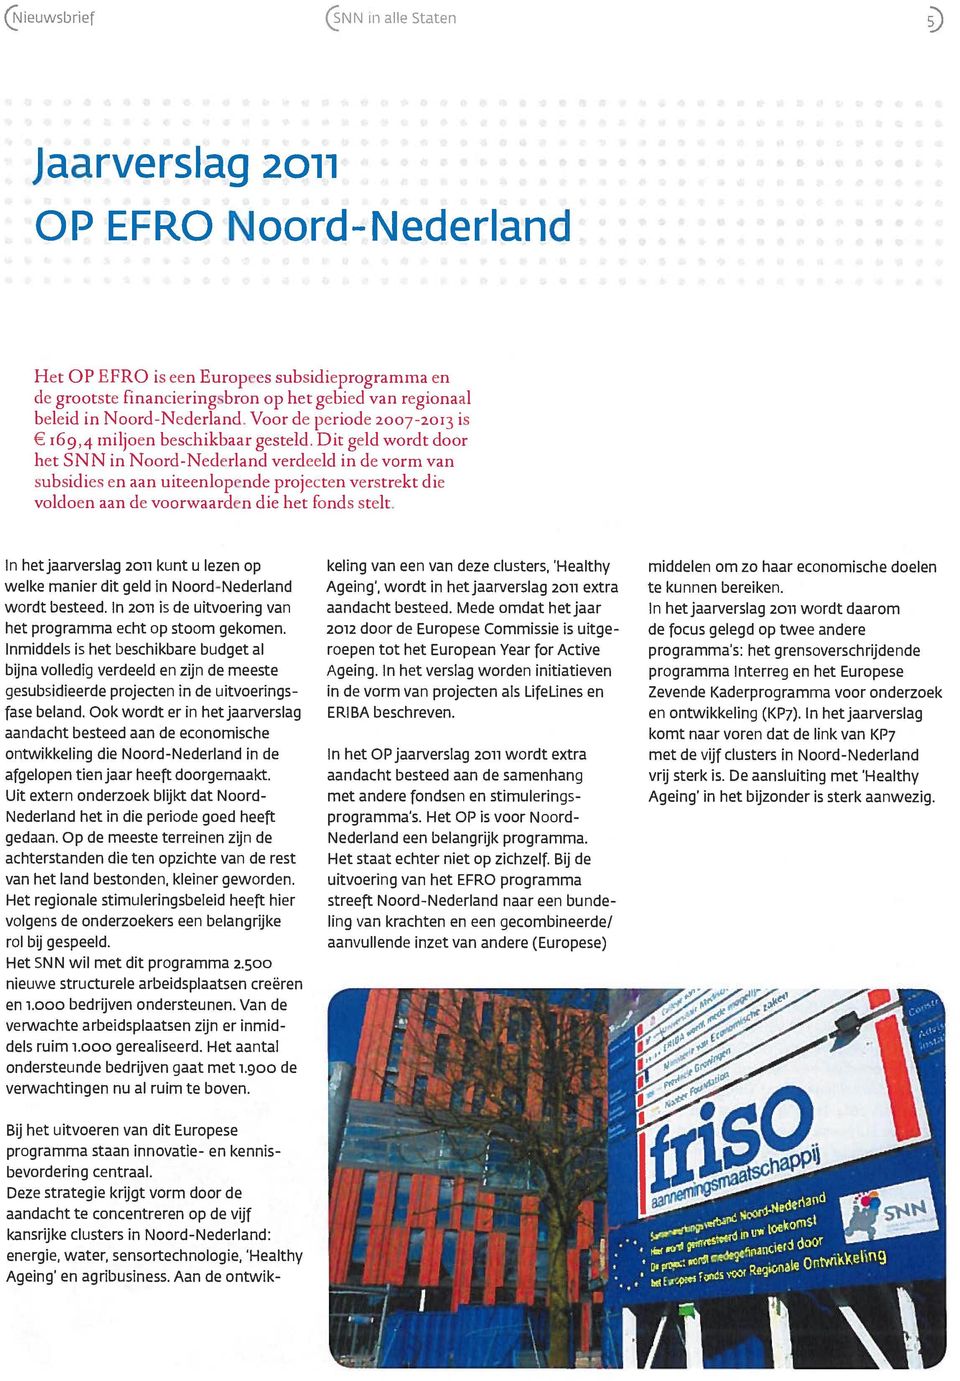 Dit geld wordt door het SNN in Noord-Nederland verdeeld in de vorm van subsidies en aan uiteenlopende projecten verstrekt die voldoen aan de voorwaarden die het Fonds stelt.